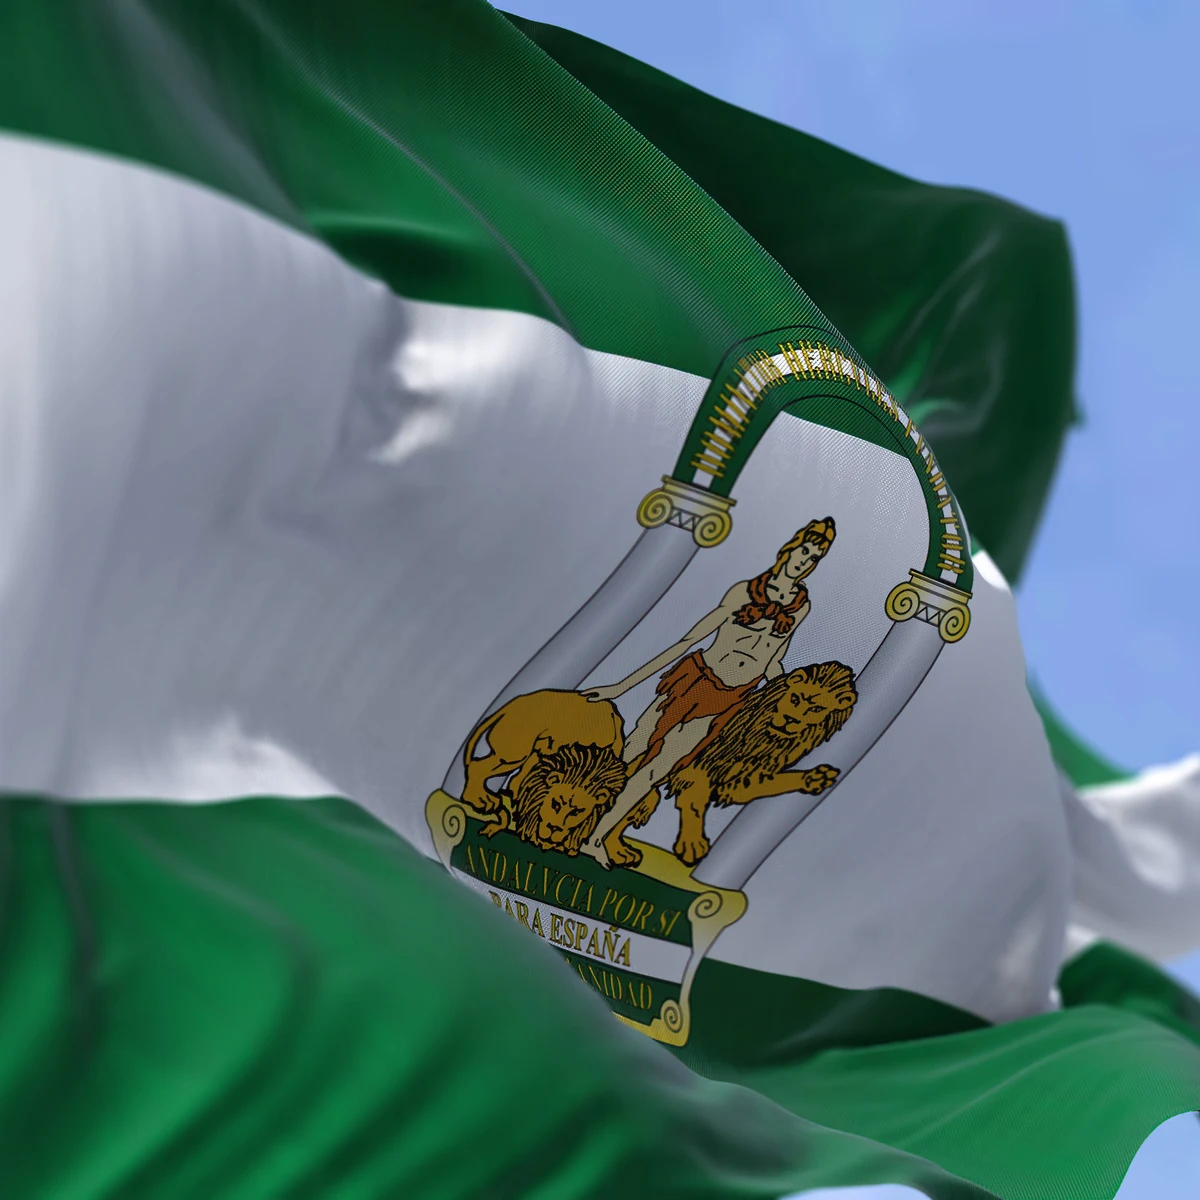 Verde y blanca: El origen de la bandera de Andalucía